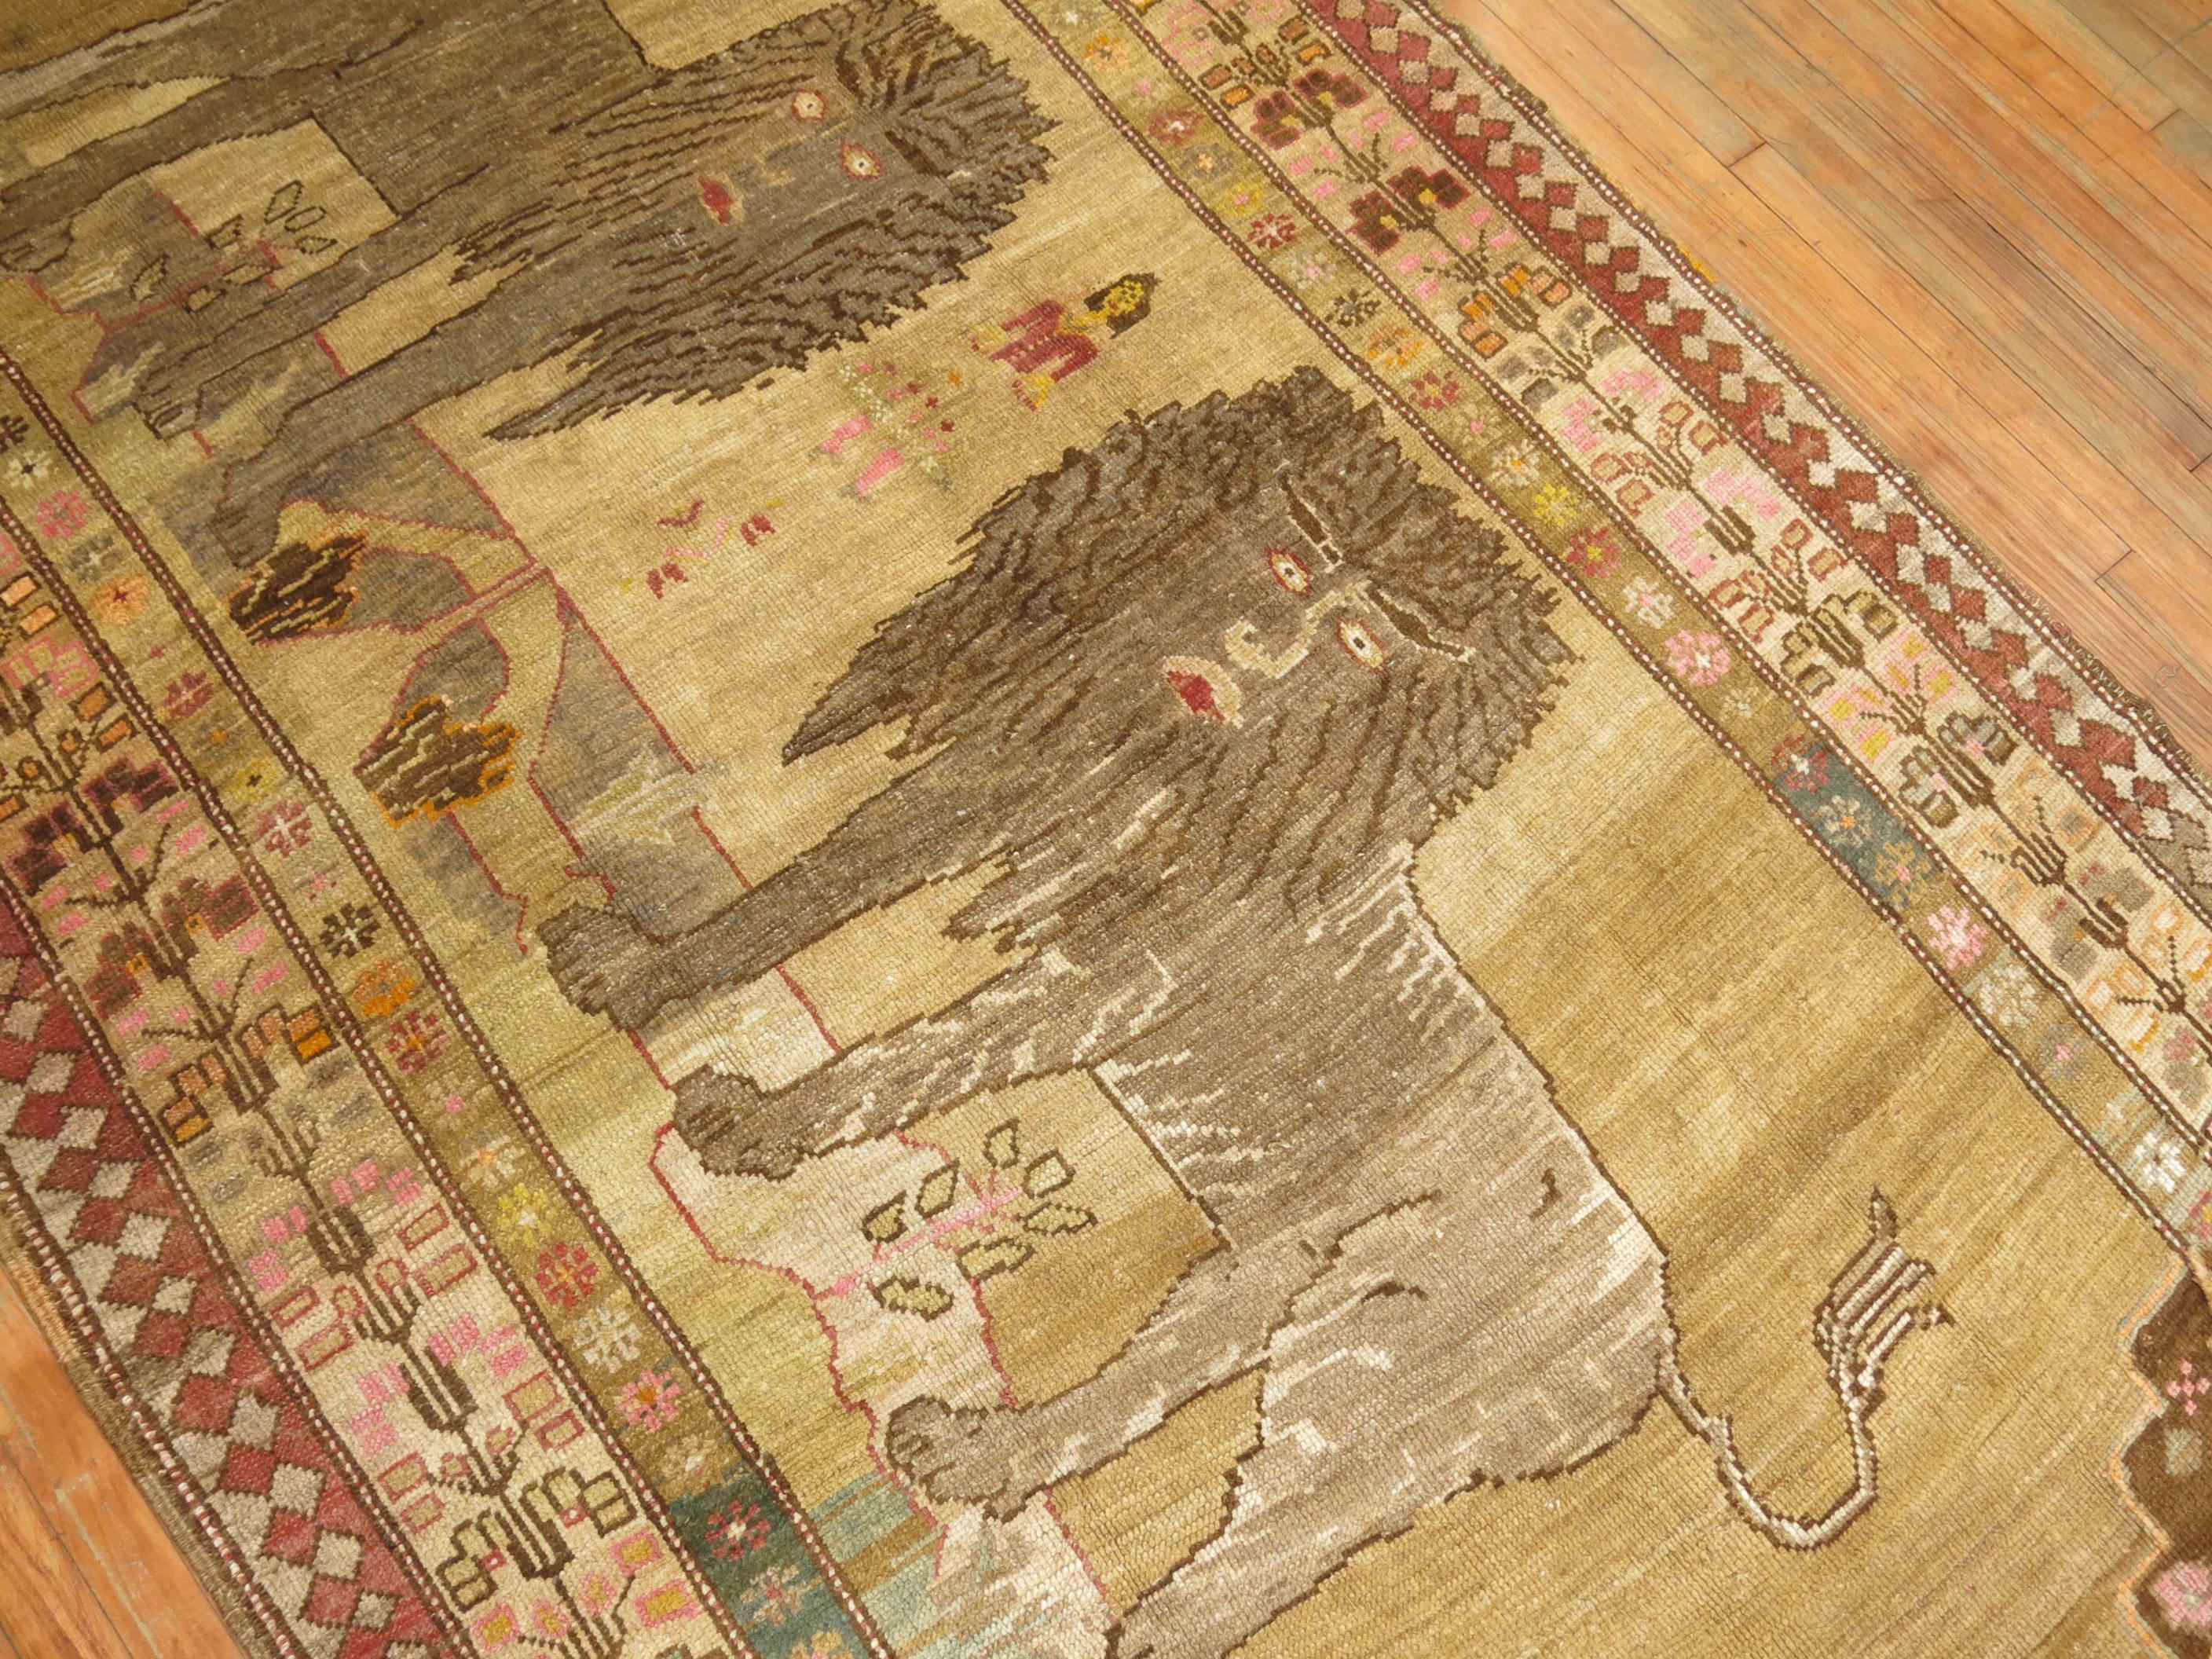 Wunderschöner türkisch-anatolischer Teppich in Galeriegröße, auf dem ein Paar großer Löwen mit anderen Figuren und Menschen abgebildet ist. Die Inschriften auf dem Teppich lassen vermuten, dass der Teppich ein Mitgiftgeschenk war. Das Stück stammt